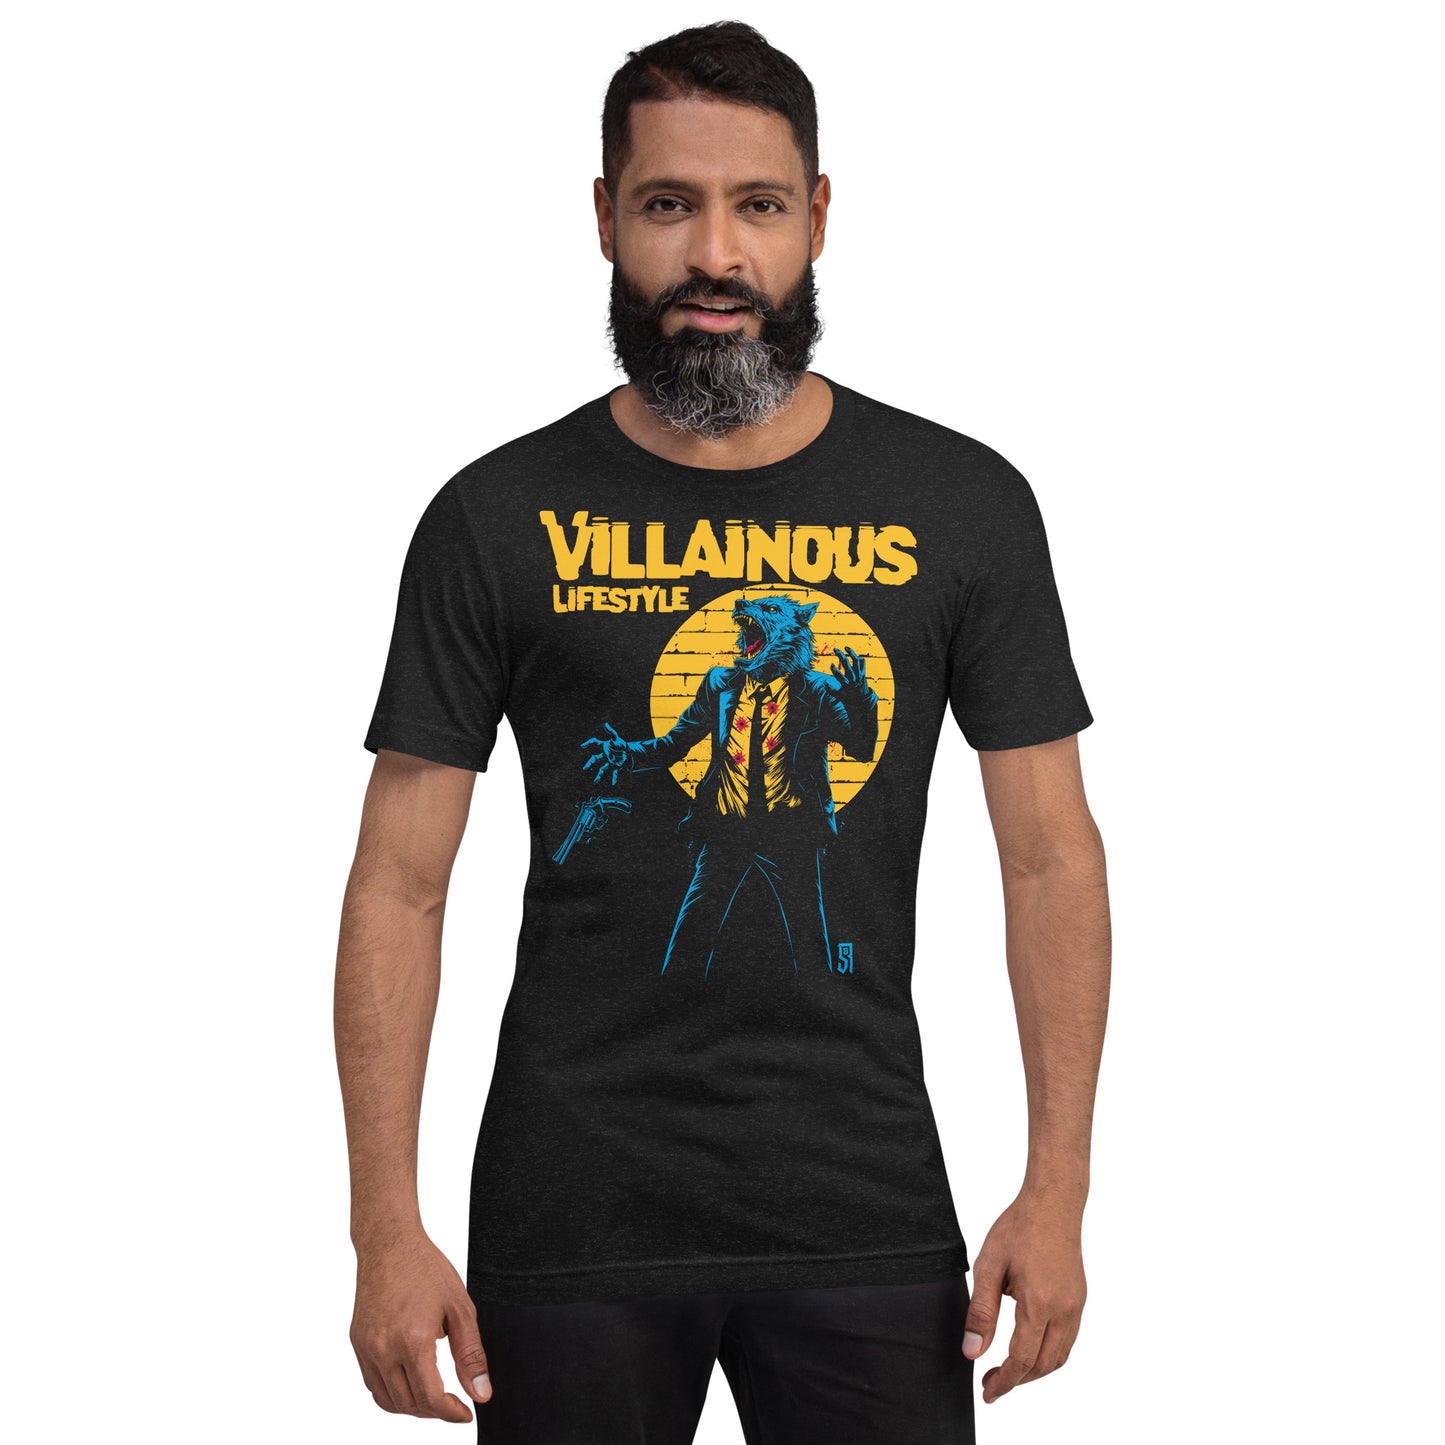 Villainous Lifestyle Werewolf Shootout Unisex Retail Fit T-Shirt